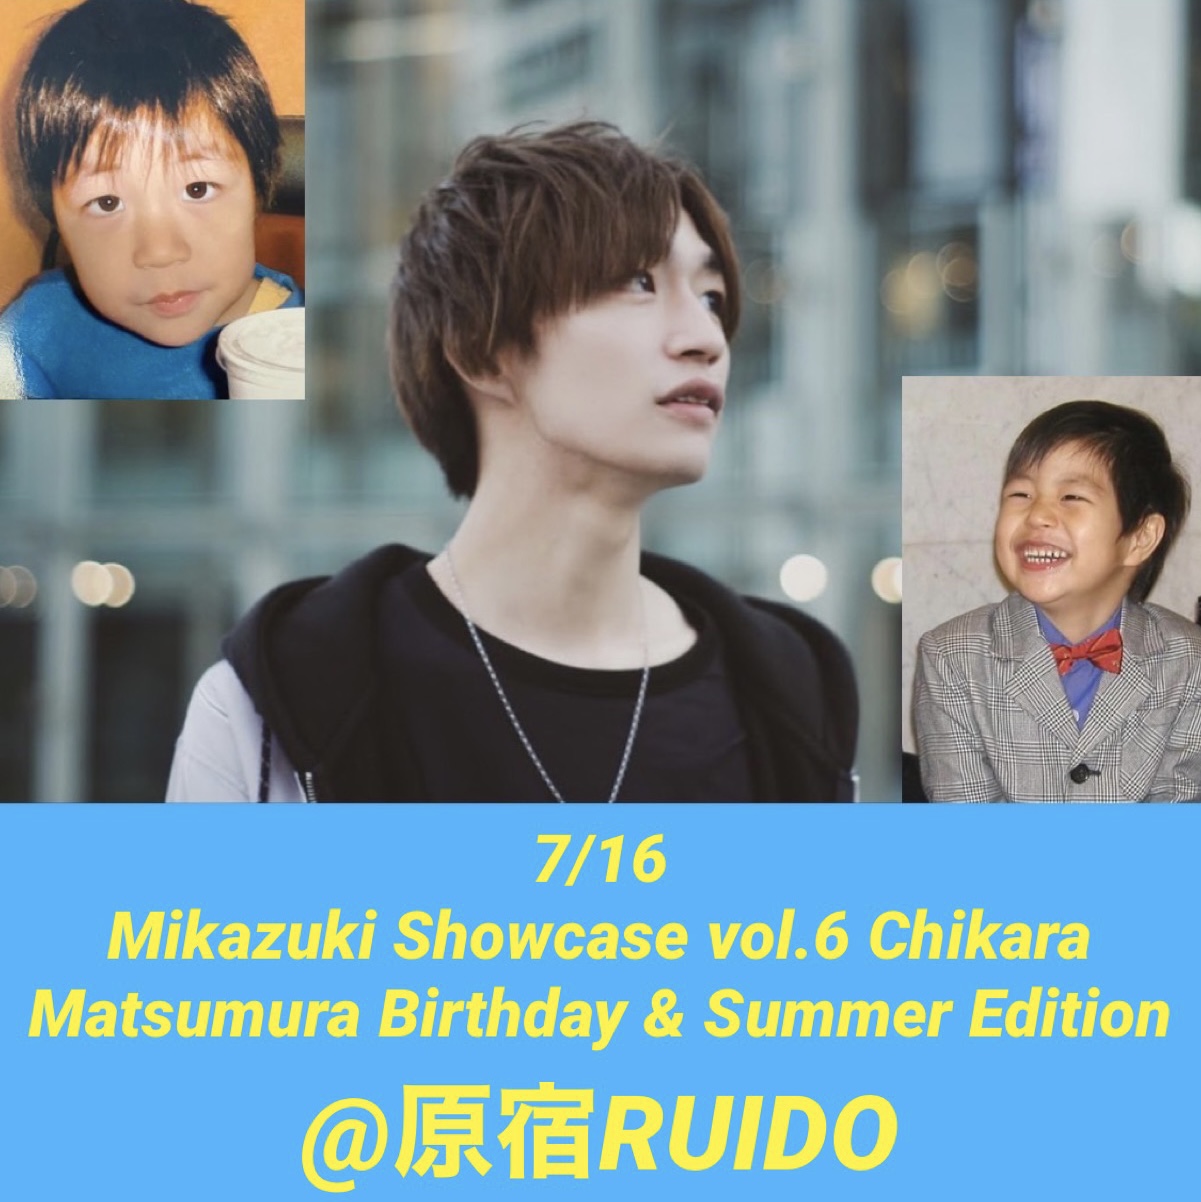 Mikazuki showcase vol.7 〜Chikara Matsumura Birthday Edithon～